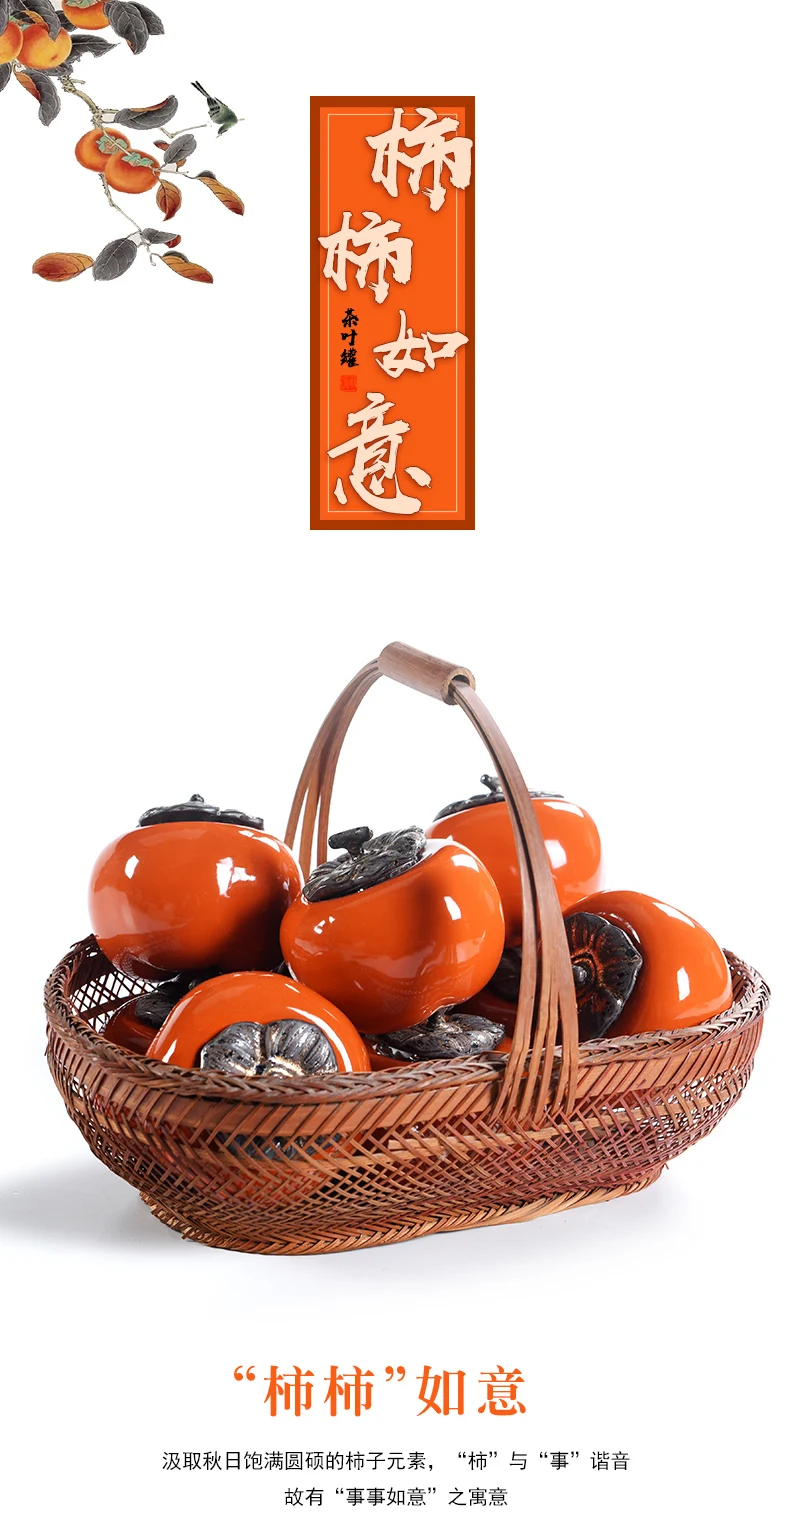 Оранжевый хурма китайский caddy puer чай жестяные контейнеры коробка для хранения чая керамическая банка путешествия чай аксессуары